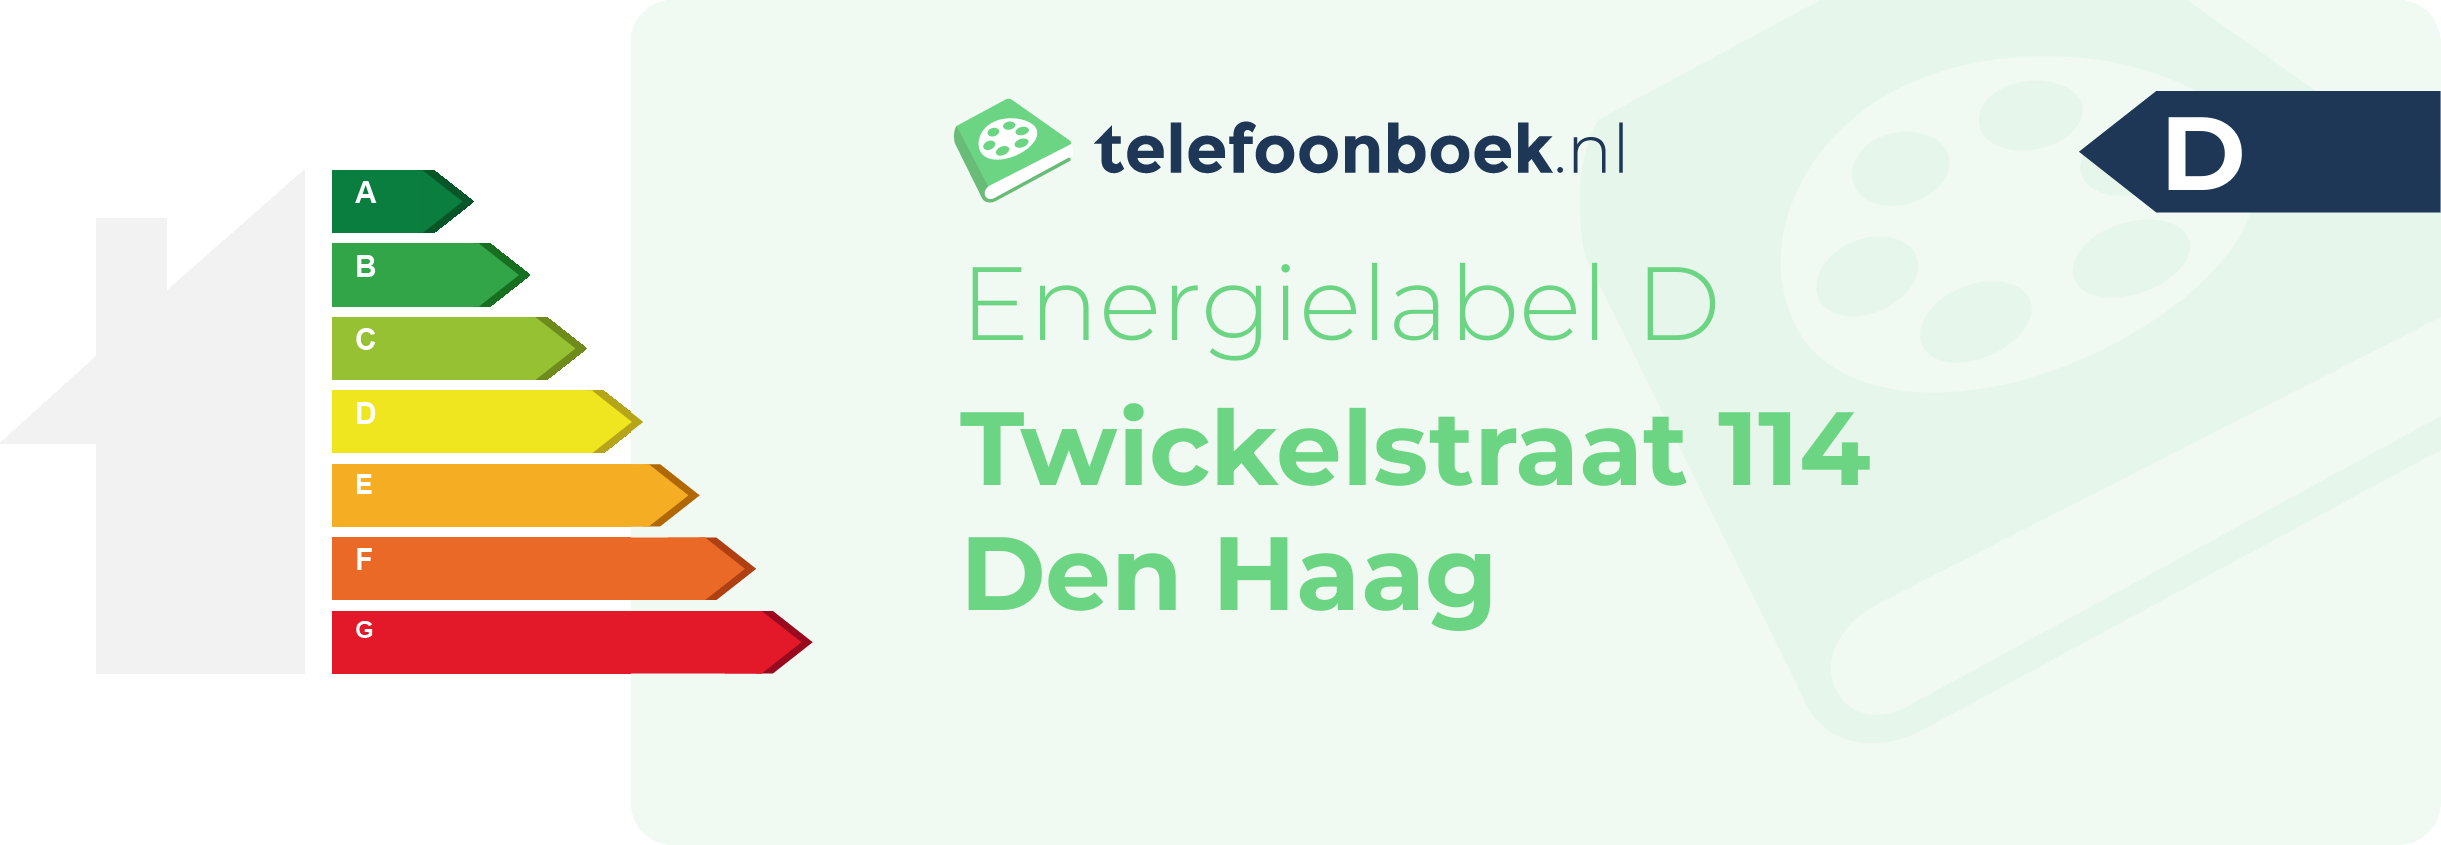 Energielabel Twickelstraat 114 Den Haag